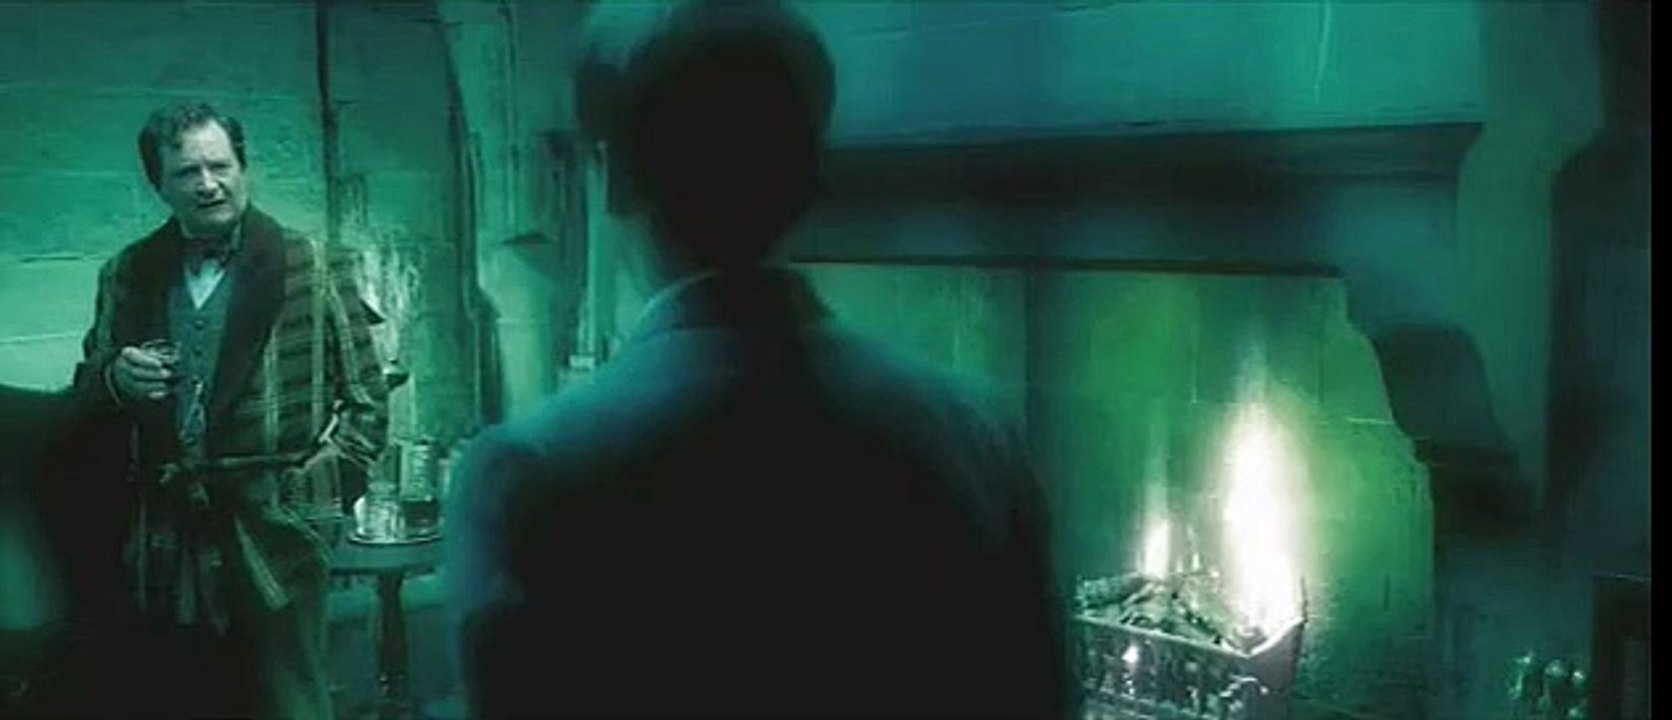 Harry Potter und der Halbblutprinz Trailer (2) DF